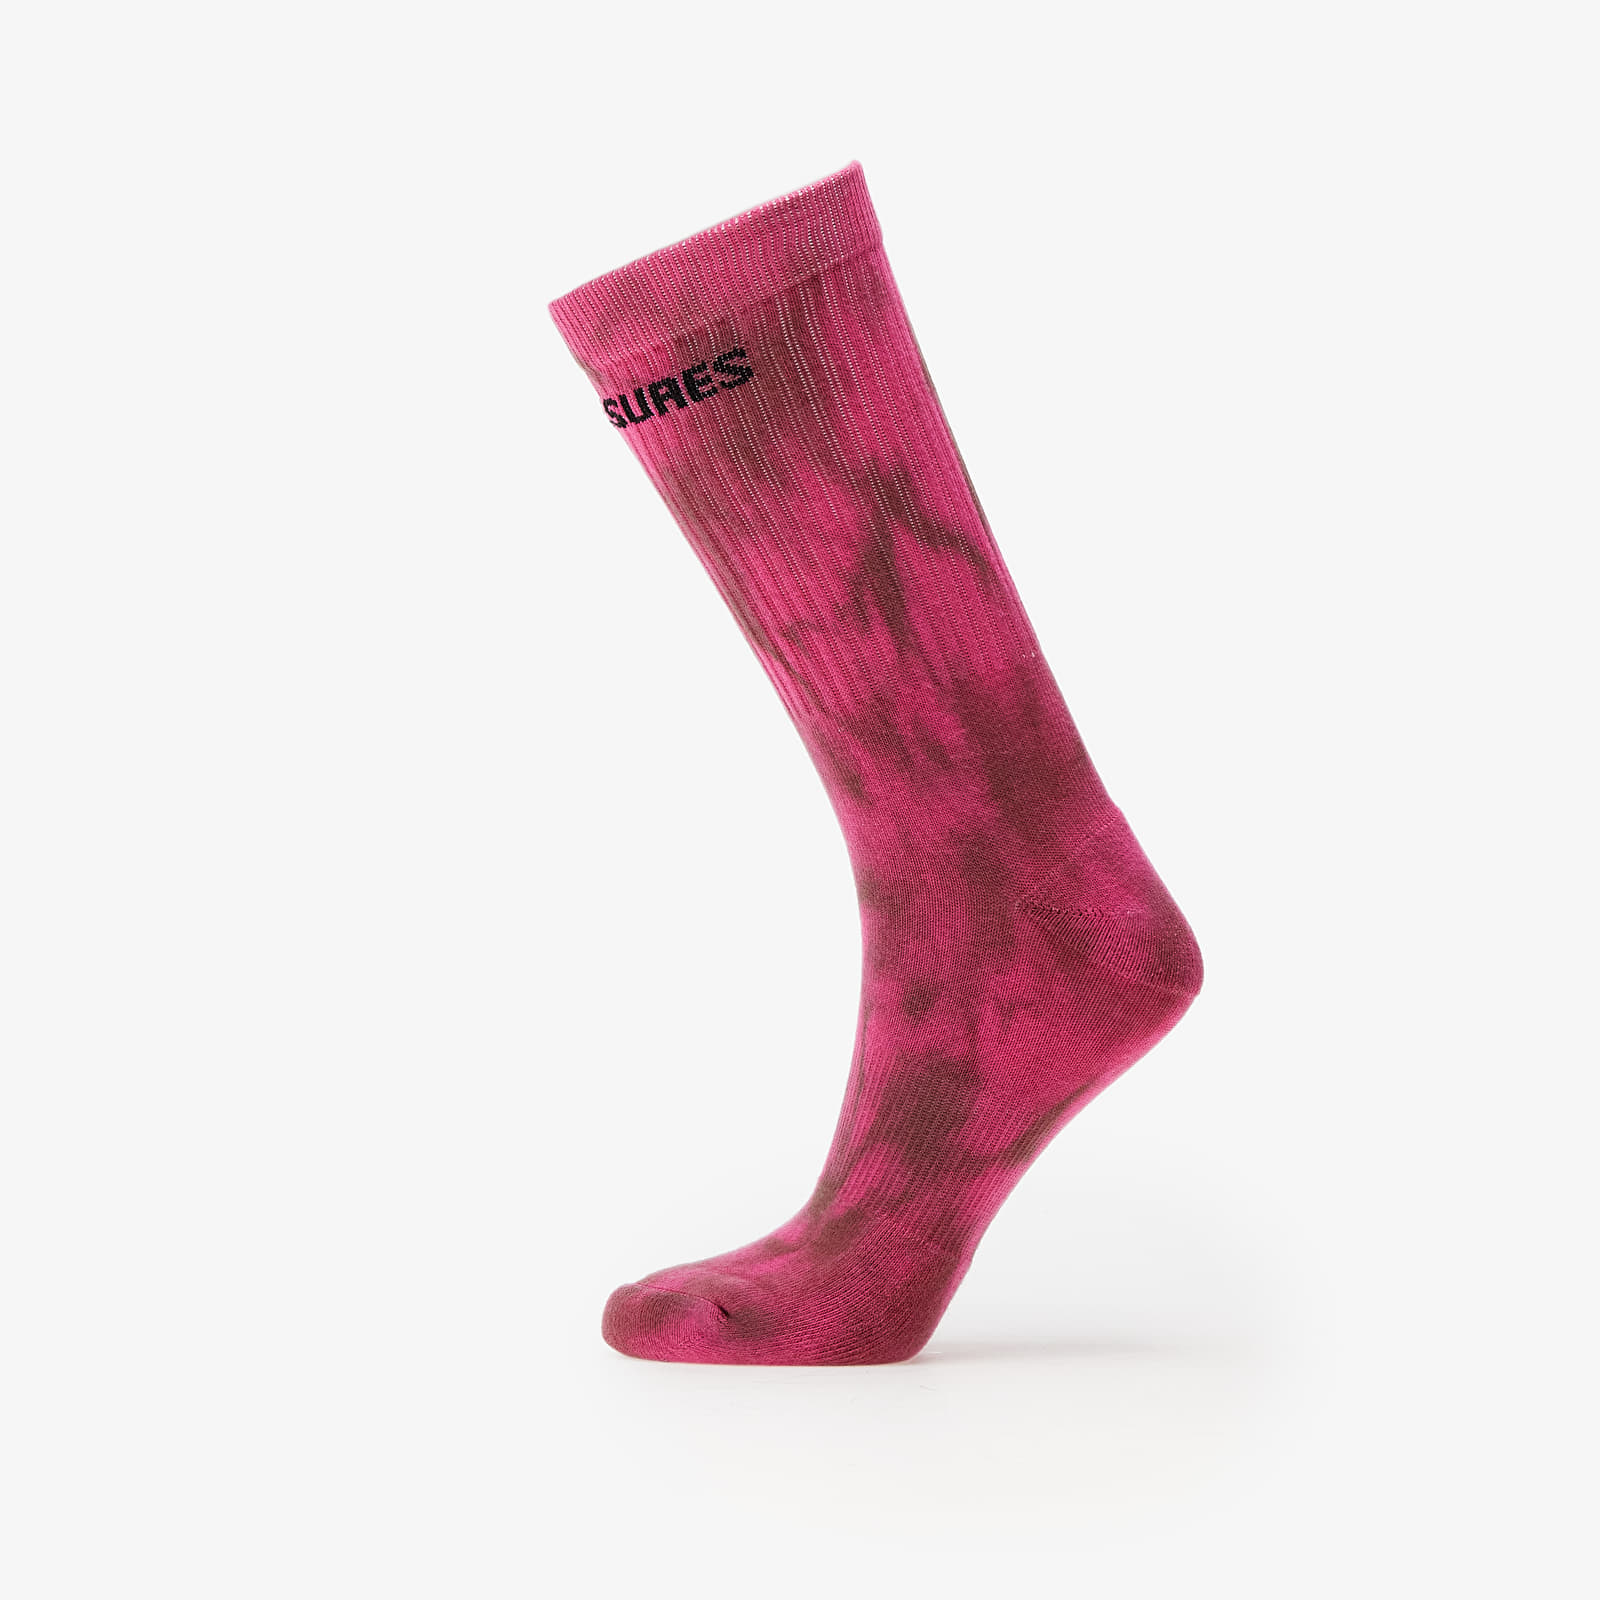 PLEASURES - indie dye socks pink